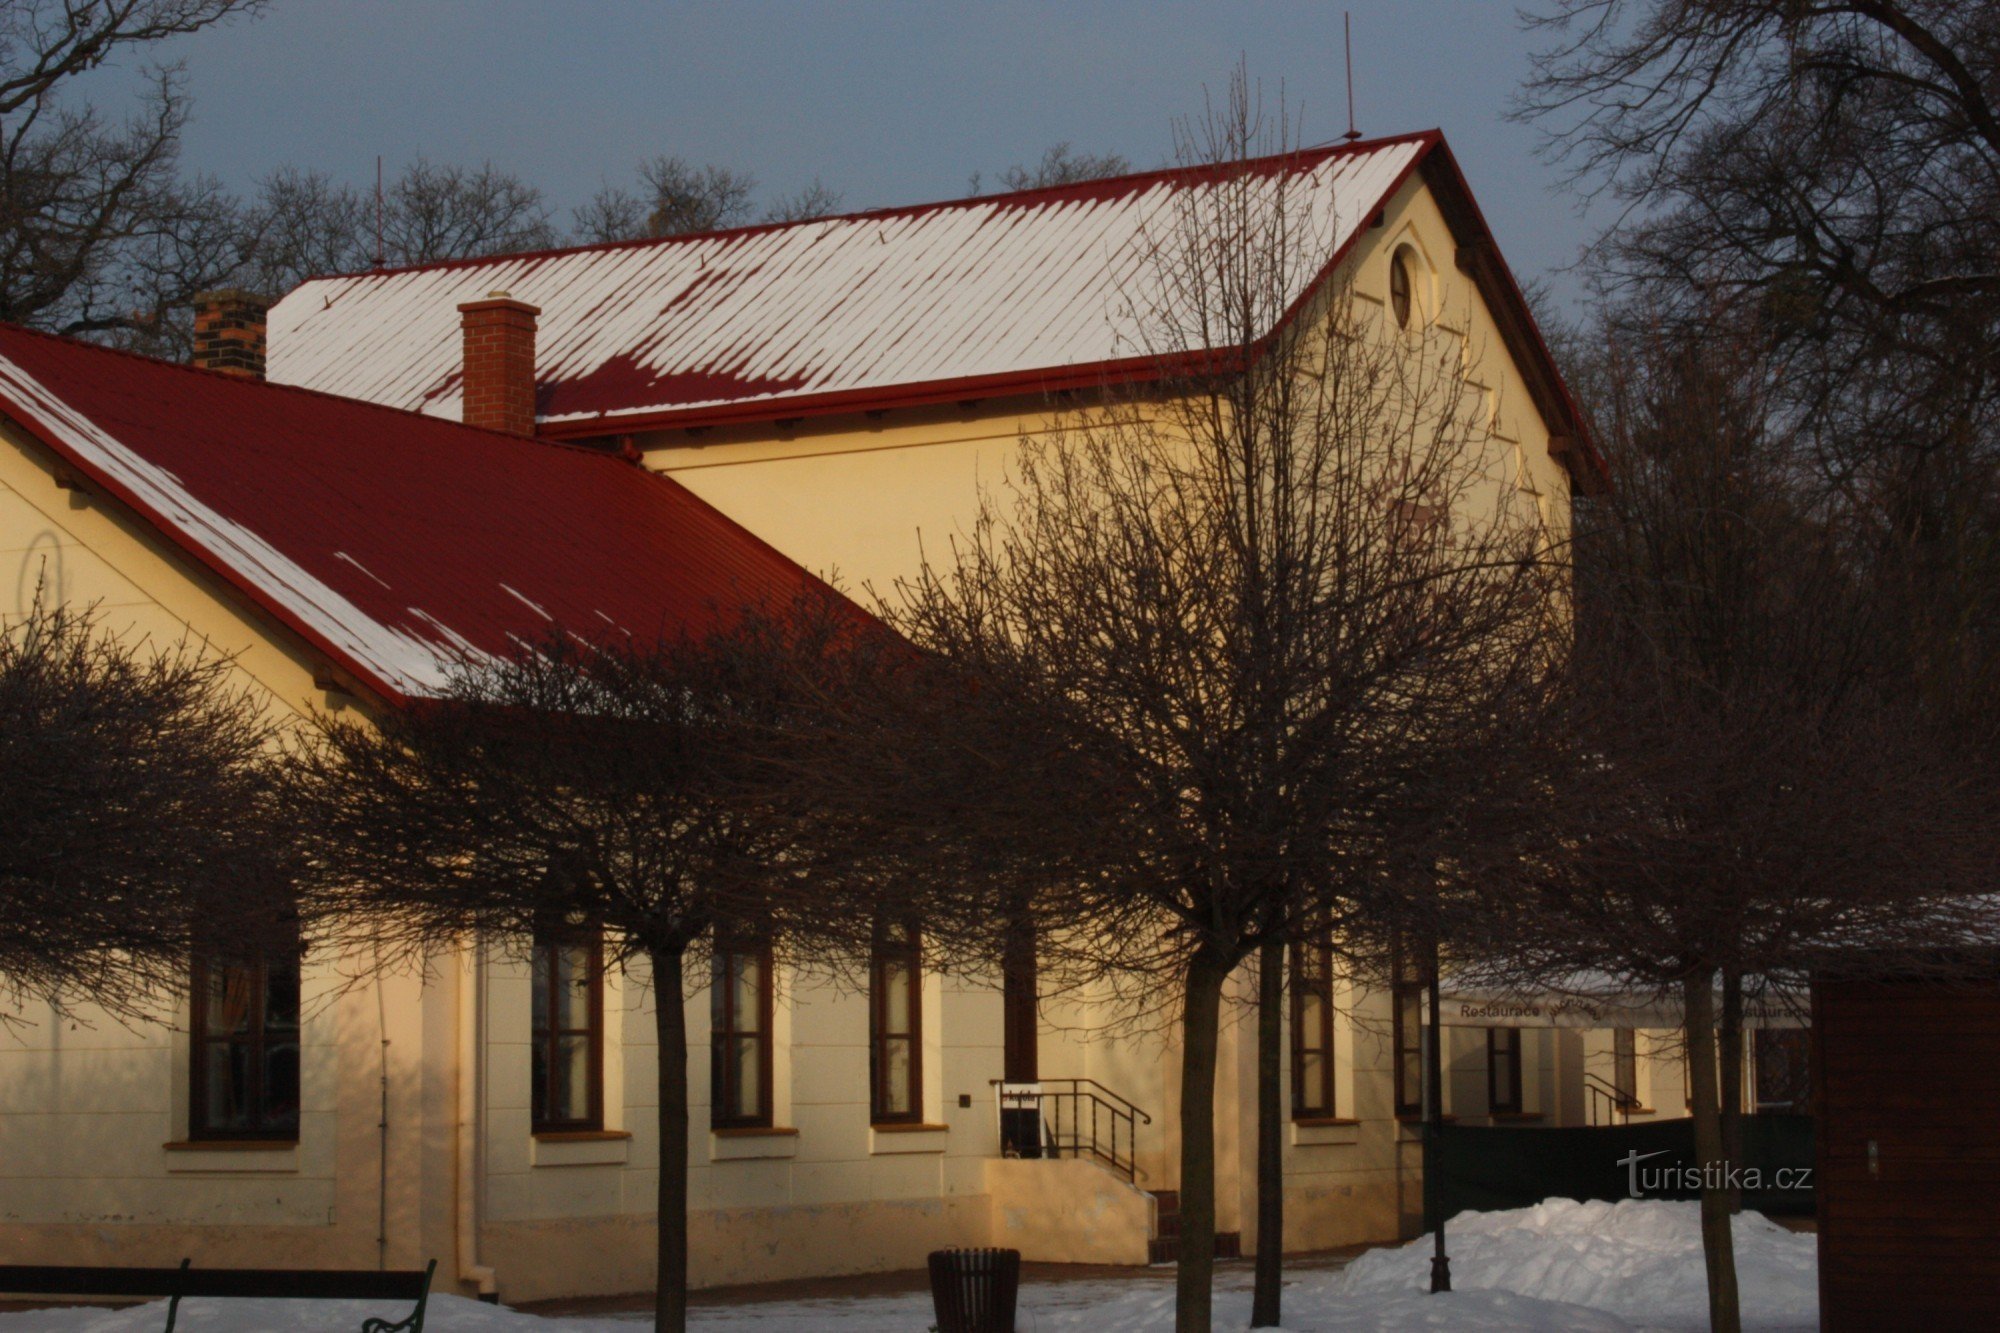 Đằng sau lịch sử của nhà hàng Michalov trong công viên cùng tên ở Přerov